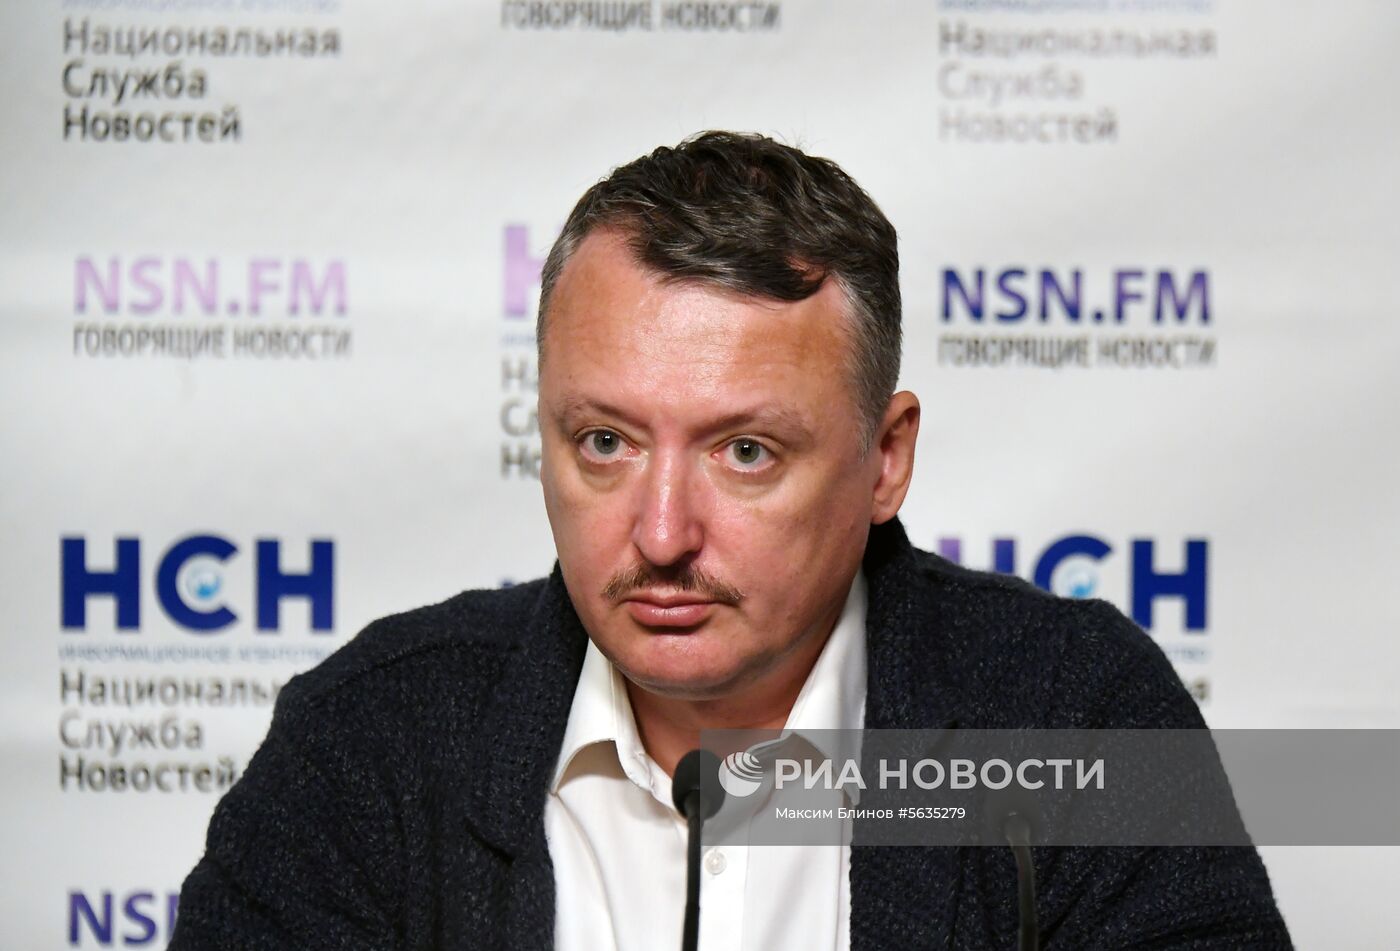 П/к на тему: "ДНР после убийства Захарченко: в чьих руках судьба Донбасса?»